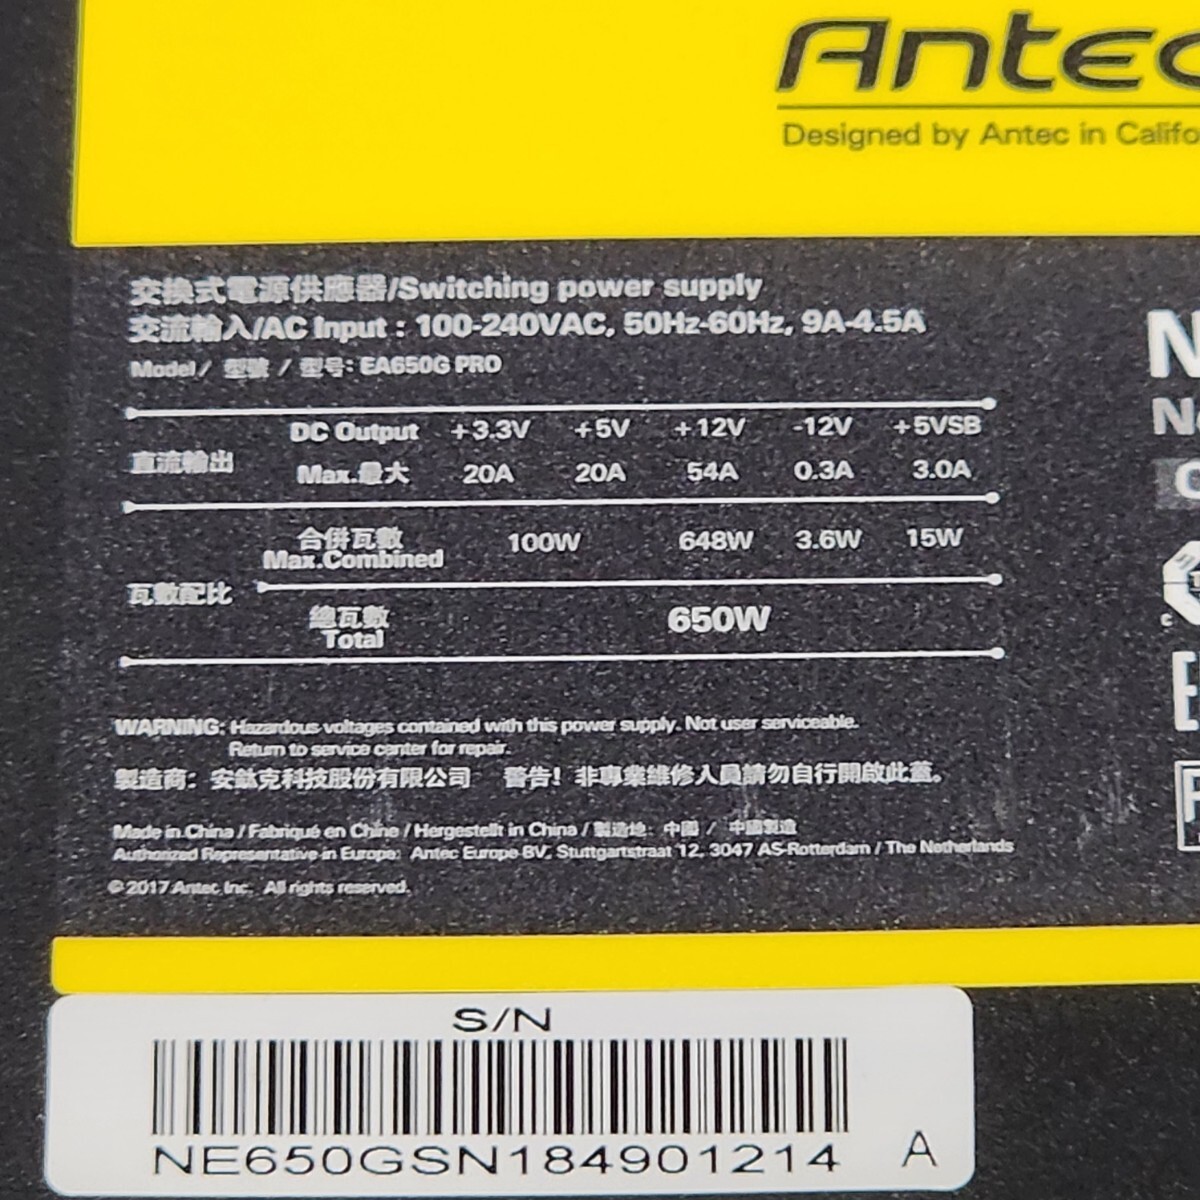 ANTEC NeoECO GOLD NE650G 650W 80PLUS GOLD засвидетельствование ATX источник питания semi плагин рабочее состояние подтверждено PC детали (3)